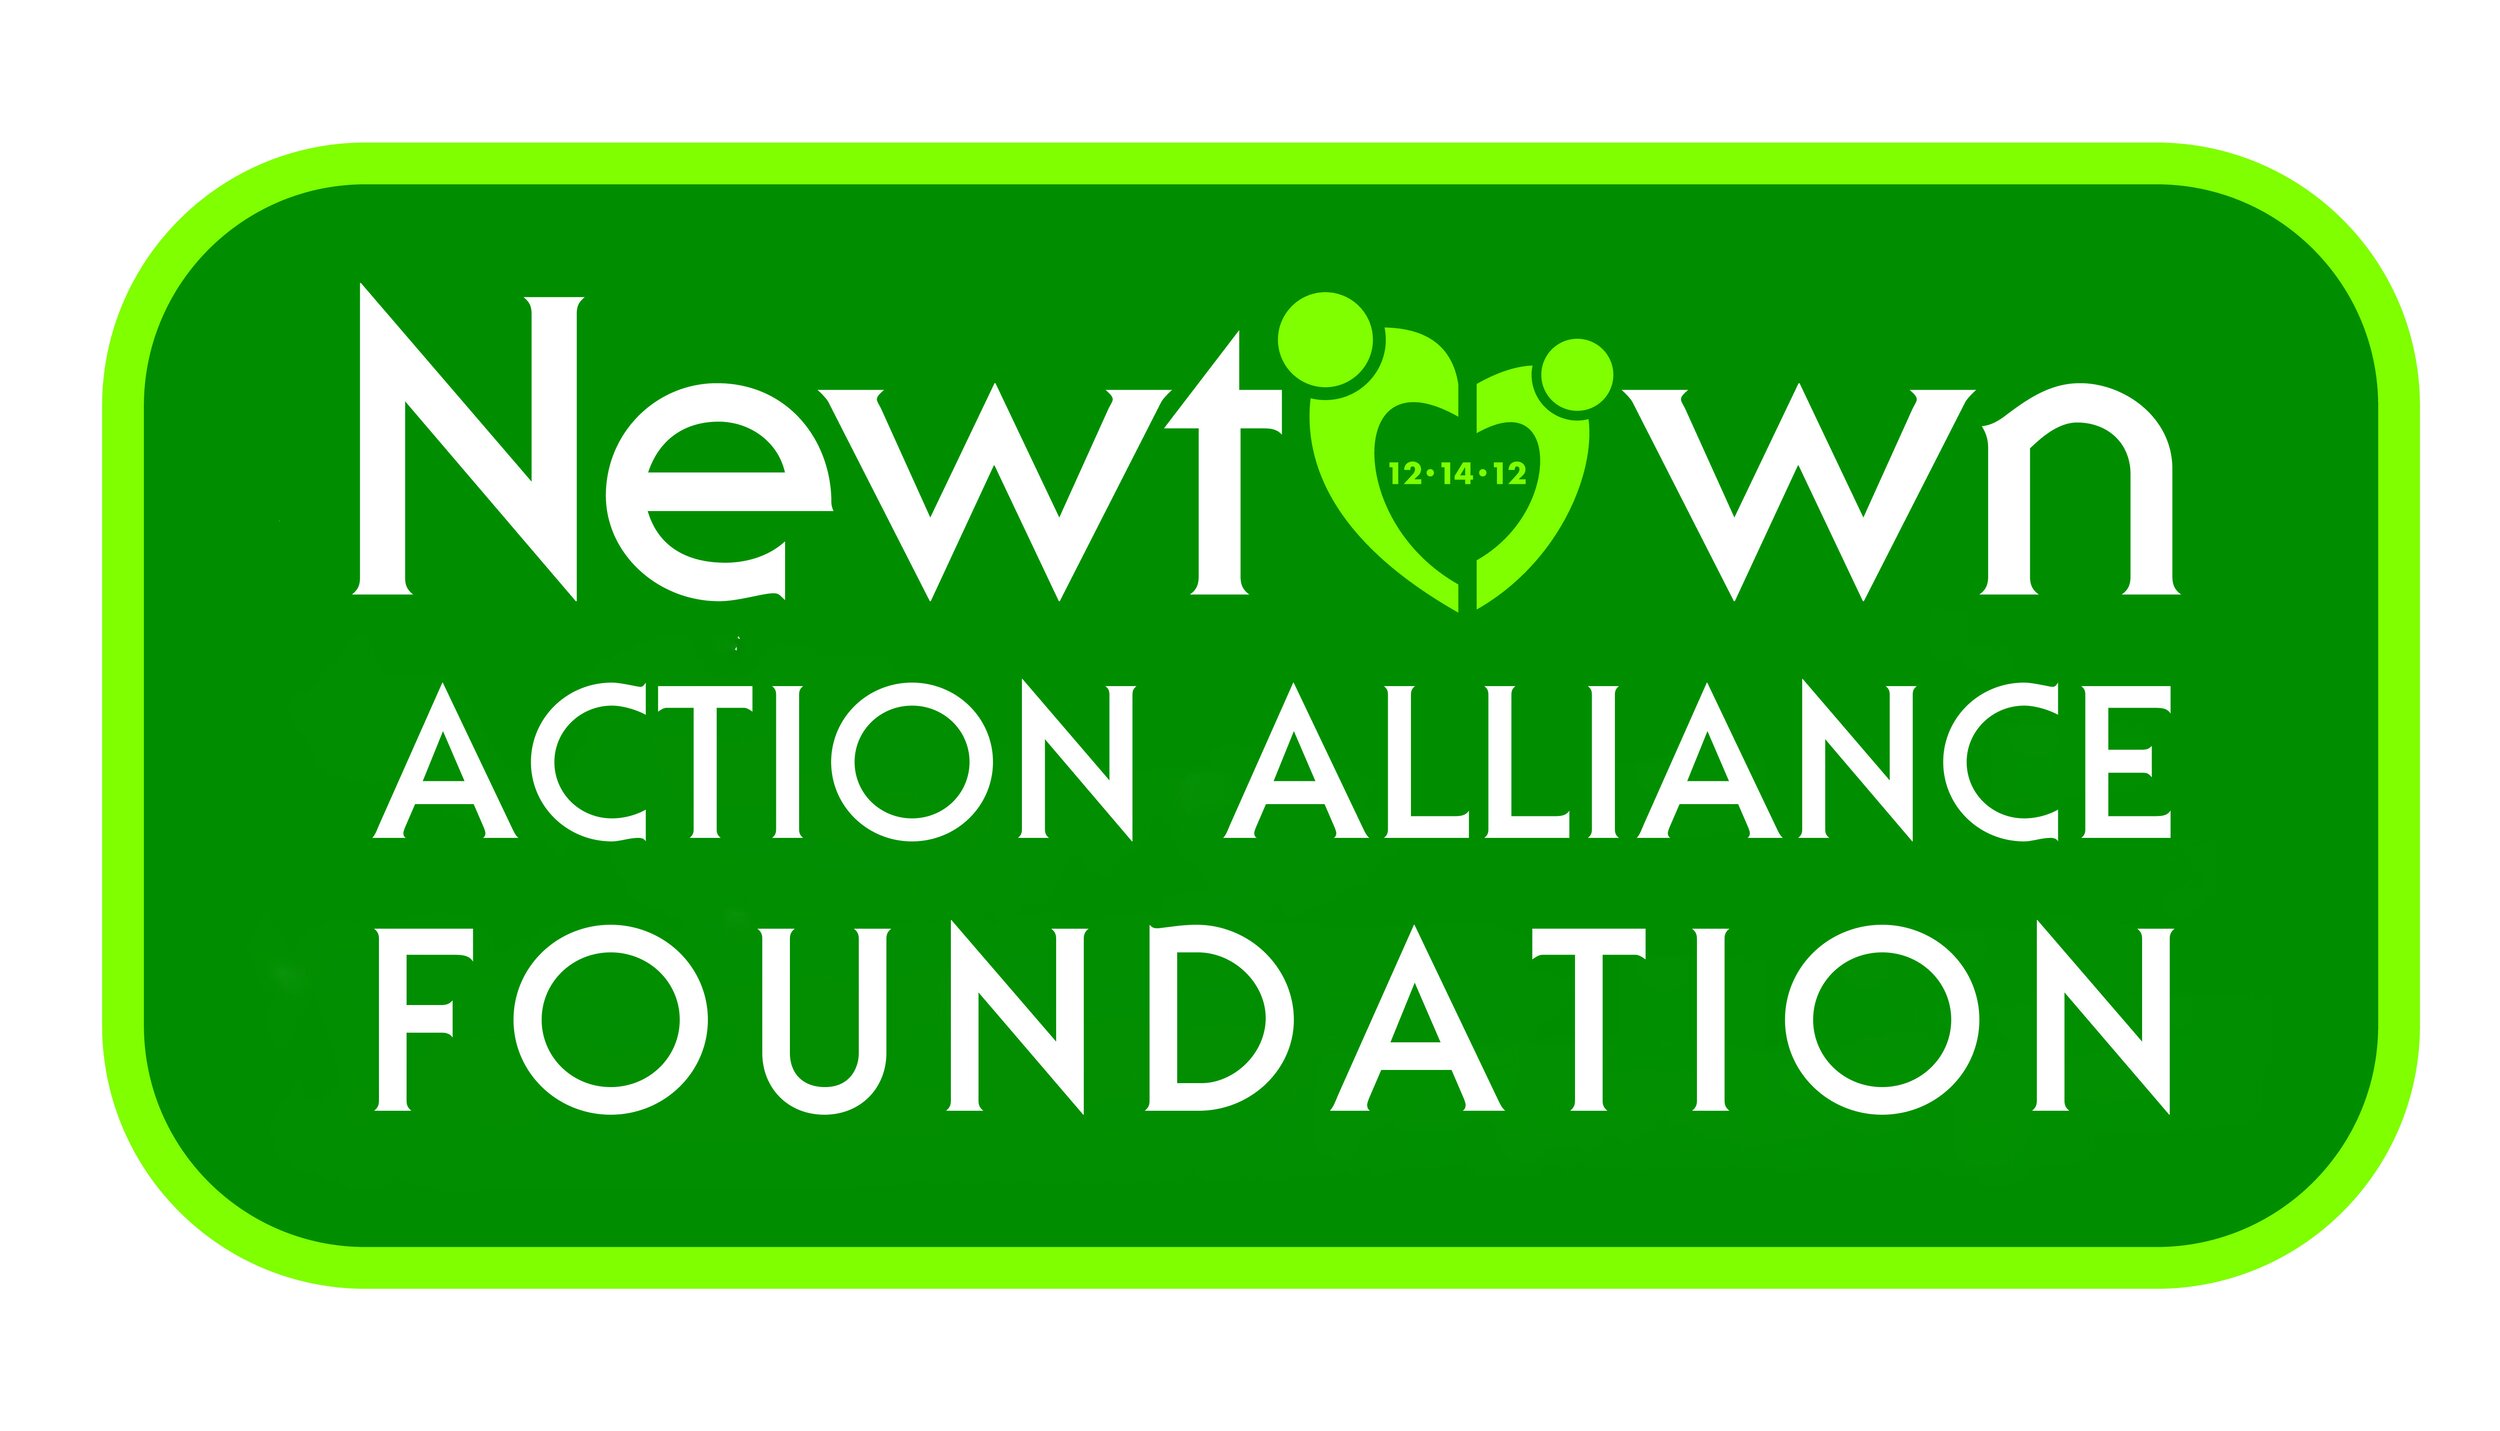 Newtown Action Alliance Foundation